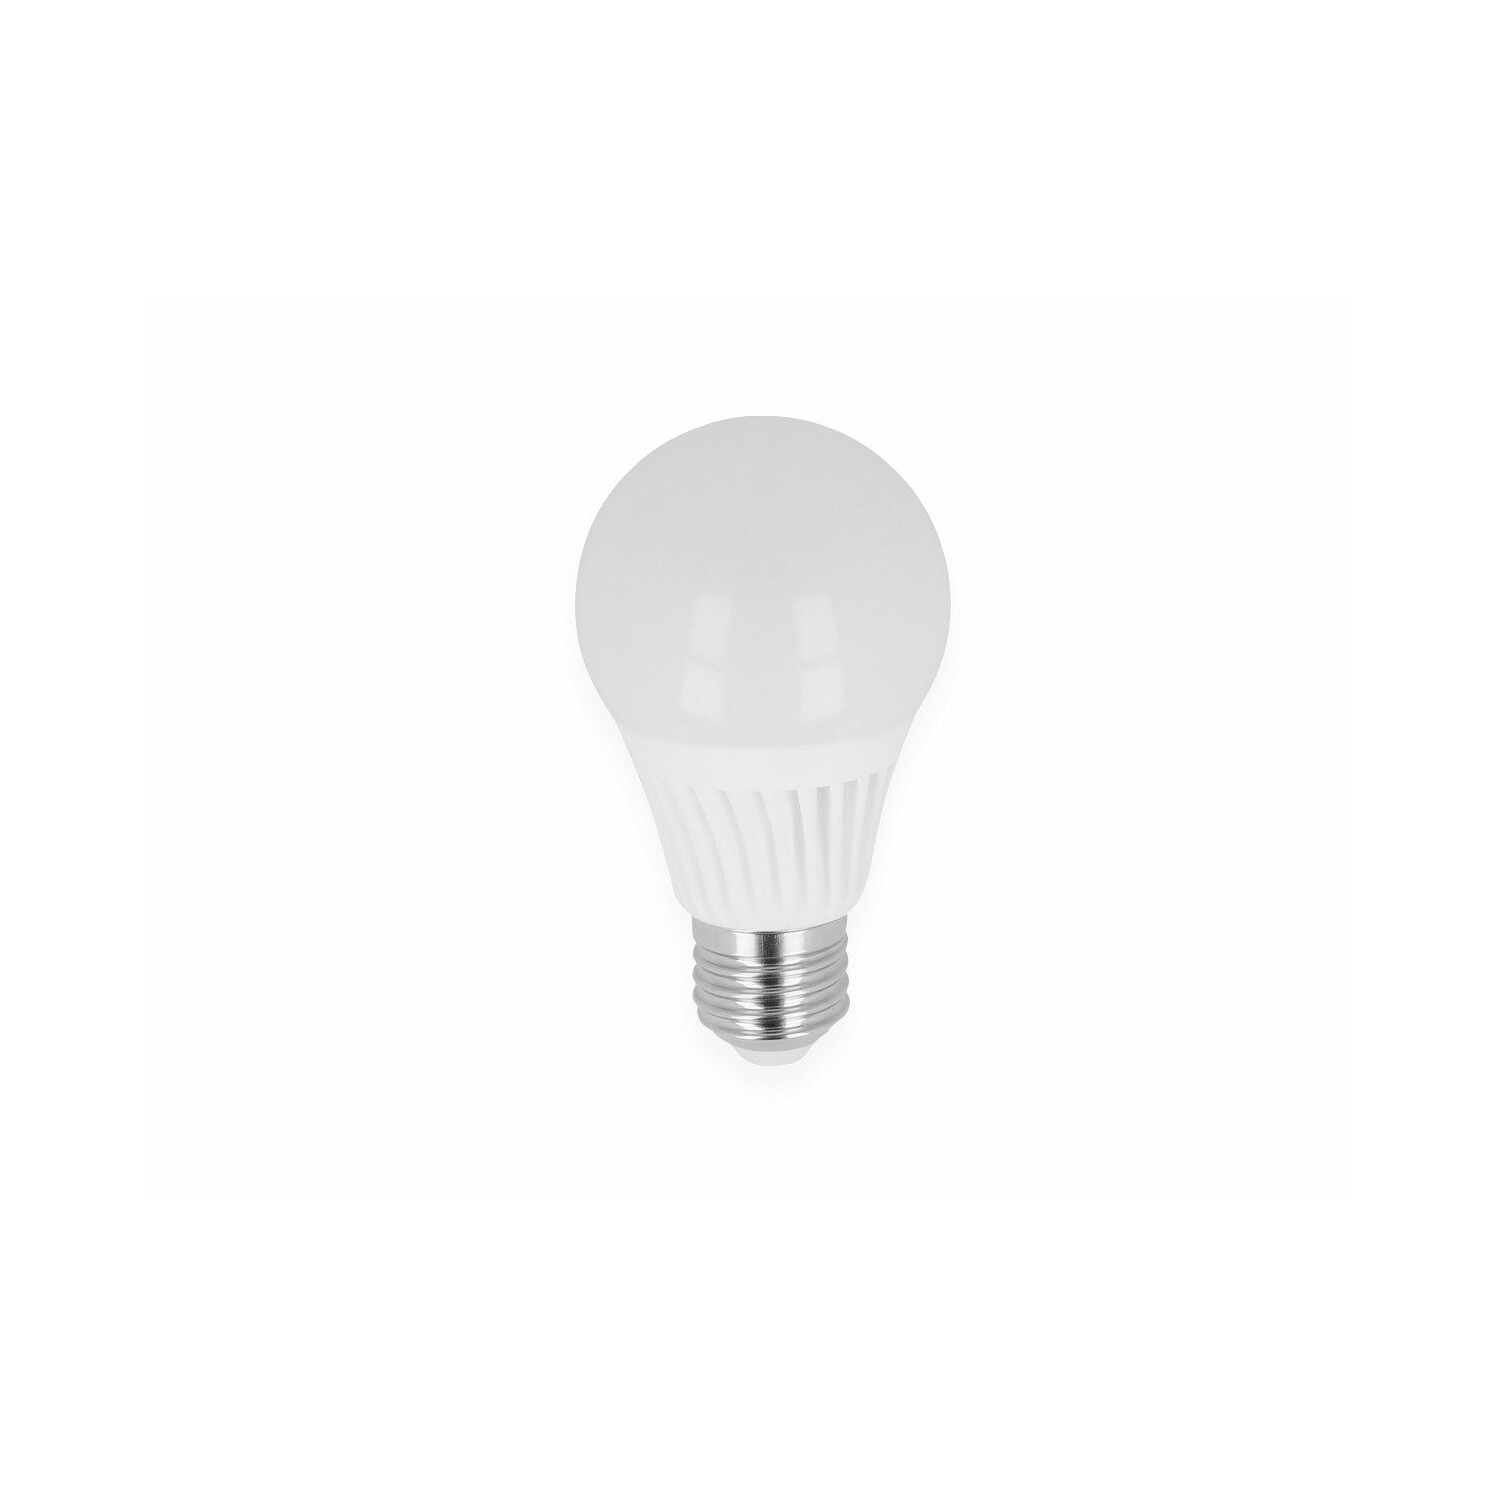 Warmweiß Leuchtmittel lm 1000 Ceramic LED LED 10W E27 LINE LED